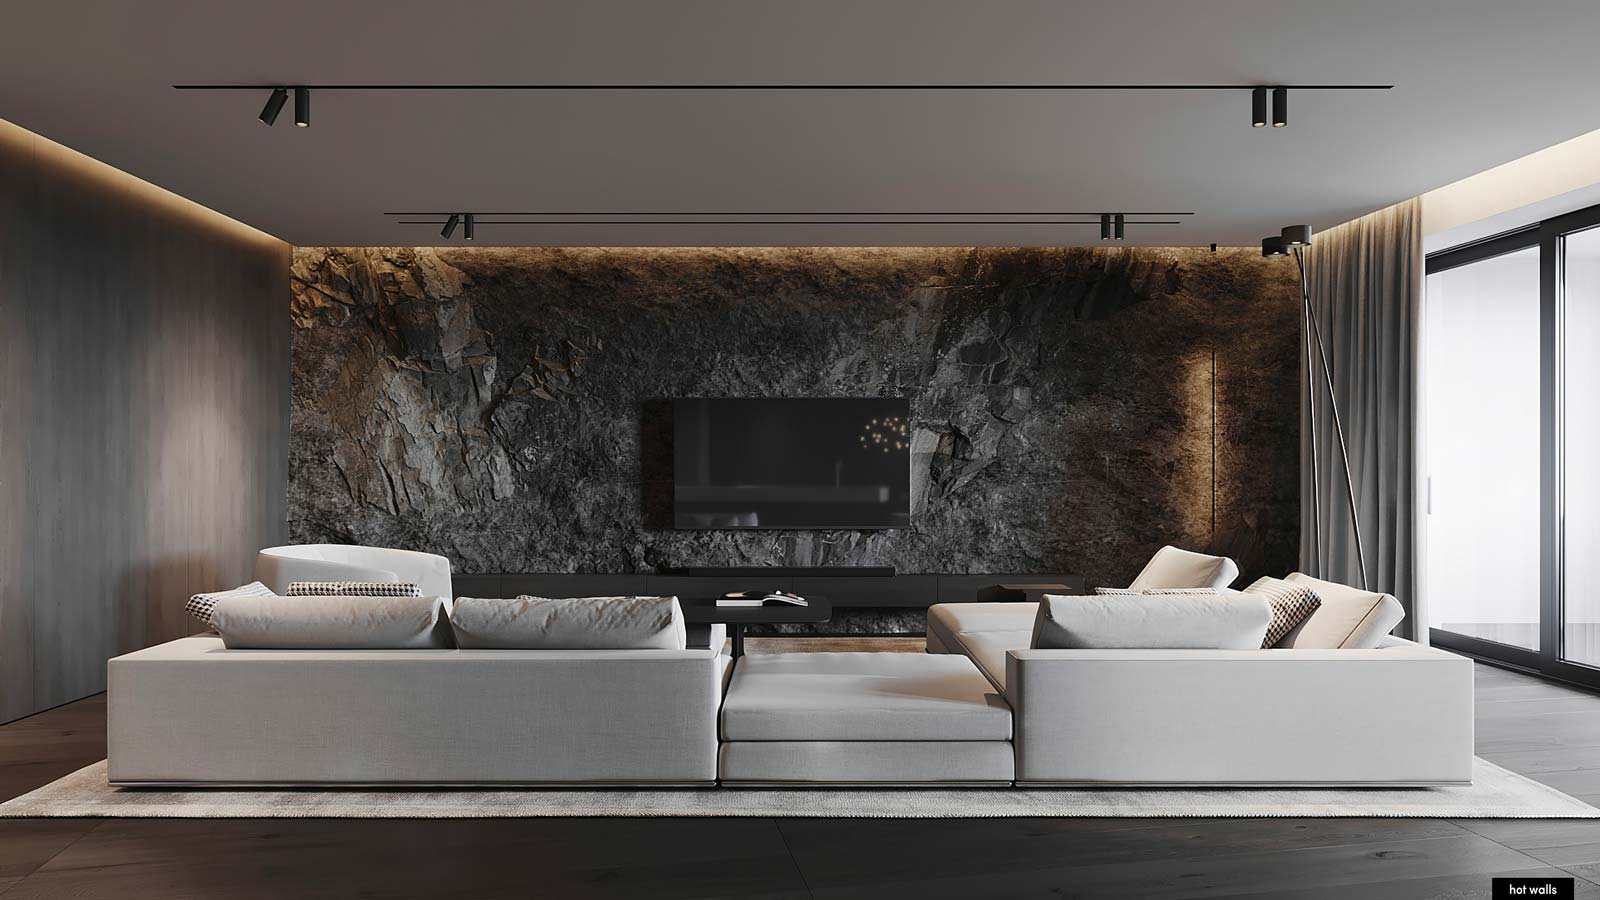 Un grand salon chaleureux avec des murs en pierre et bois et un grand canapé blanc au centre